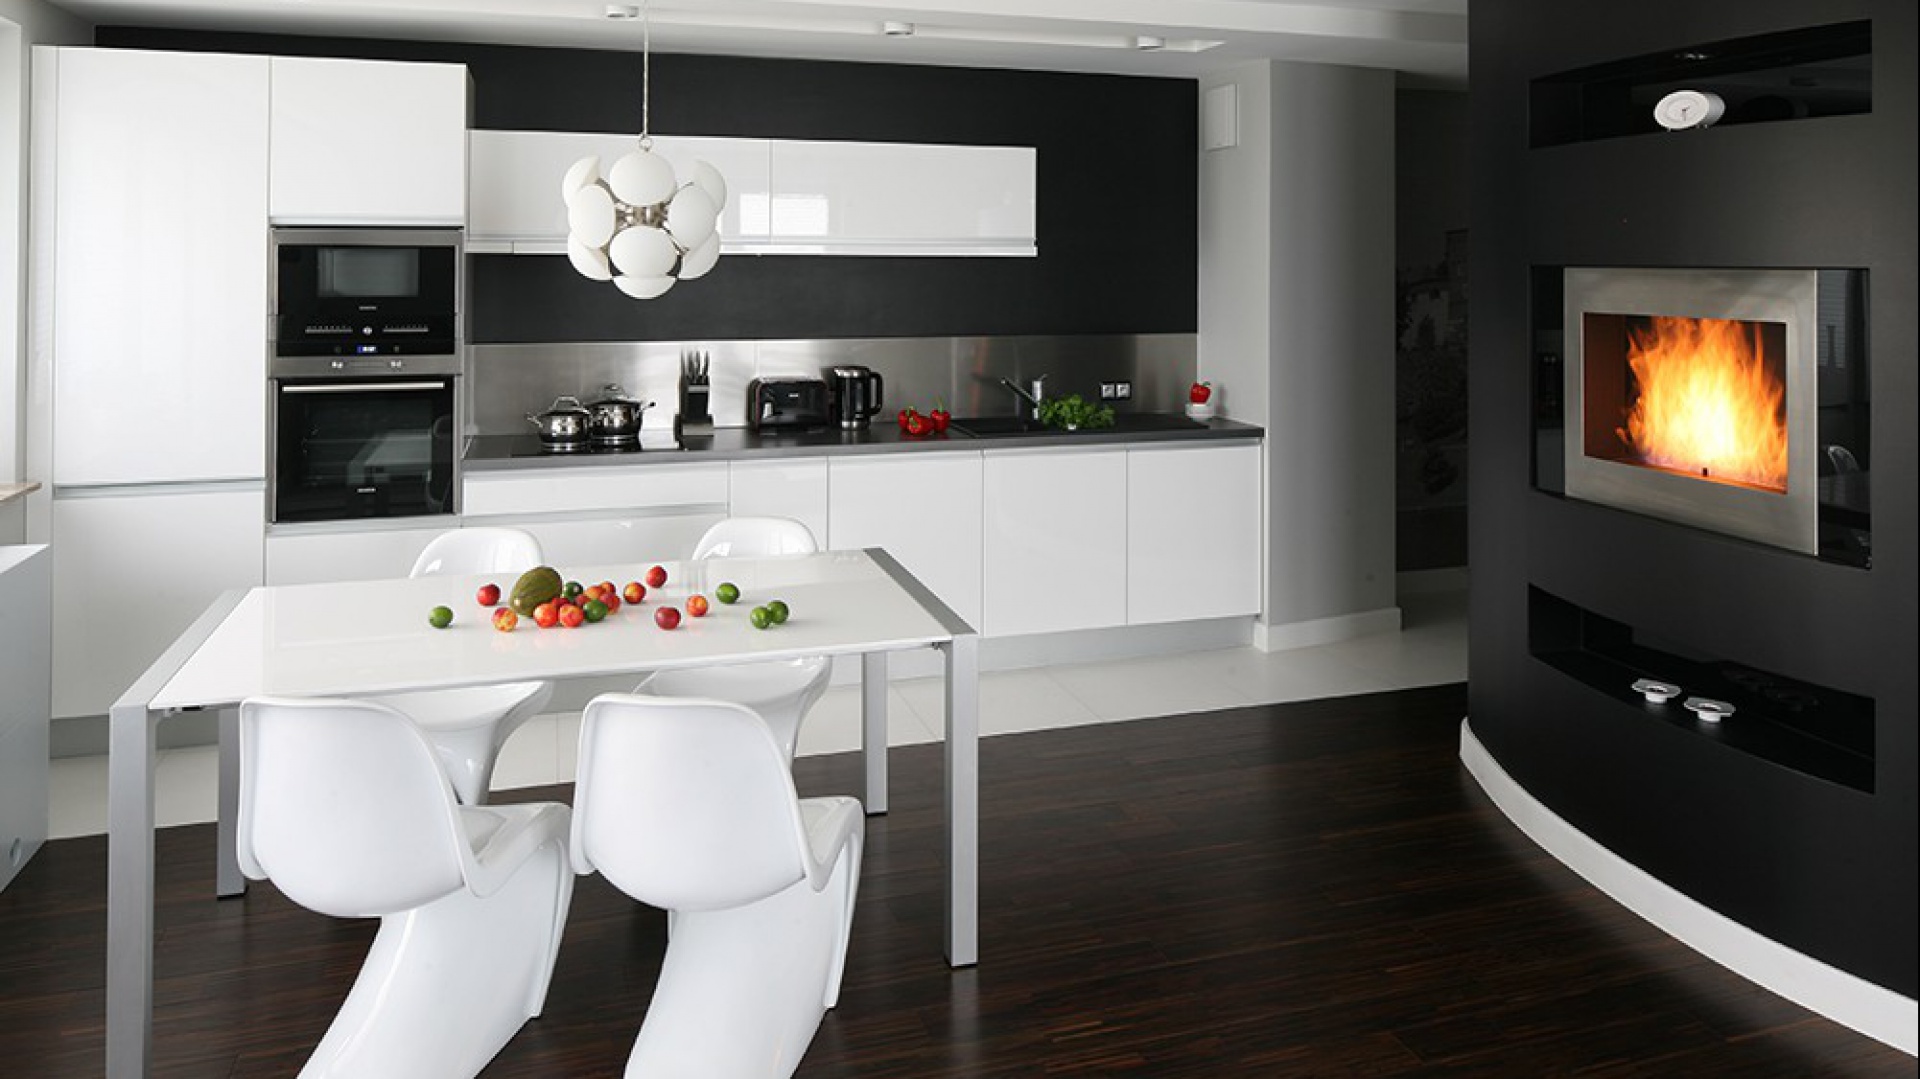 Aranżacja kuchni jest minimalistyczna, z paletą kolorów ograniczonych do bieli, czerni i metalicznej szarości. Projekt Studio Formy. Fot. Archiconnect.pl